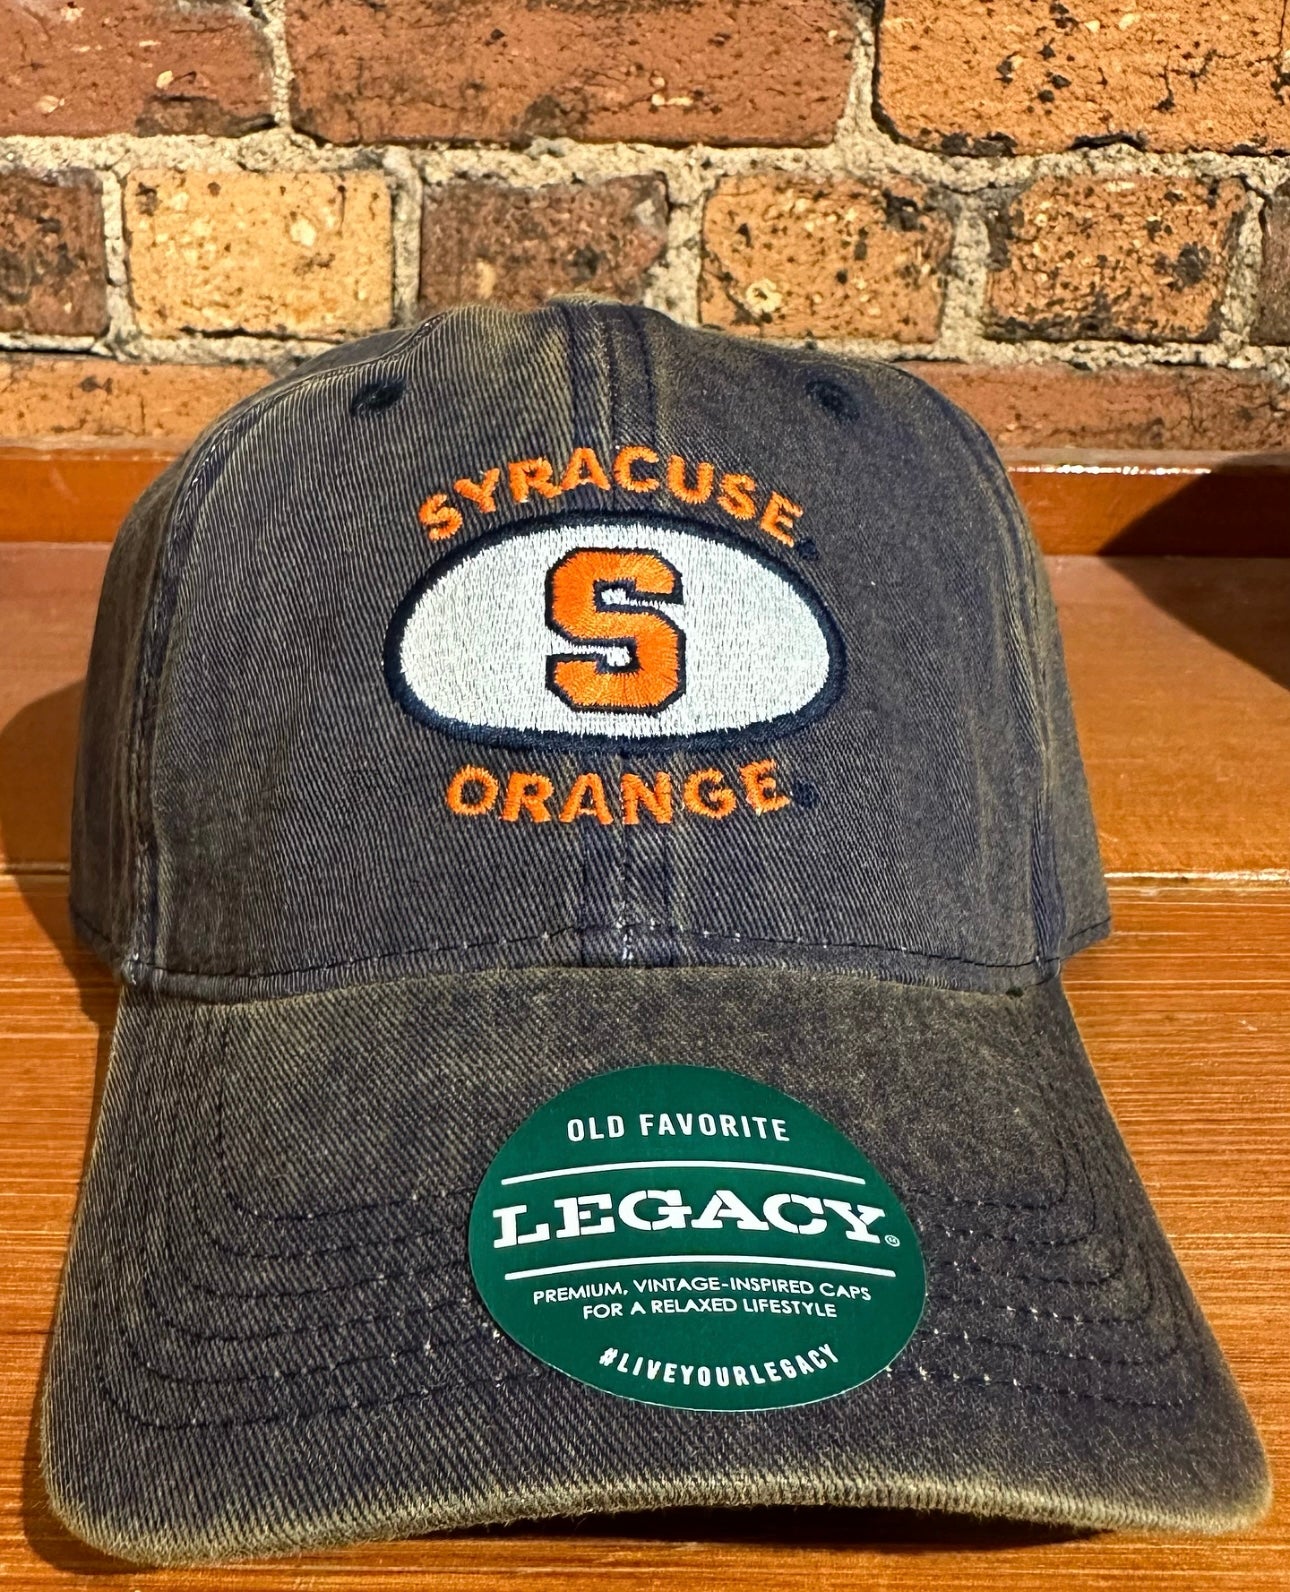 Syracuse Orange OFA Hat - Legacy